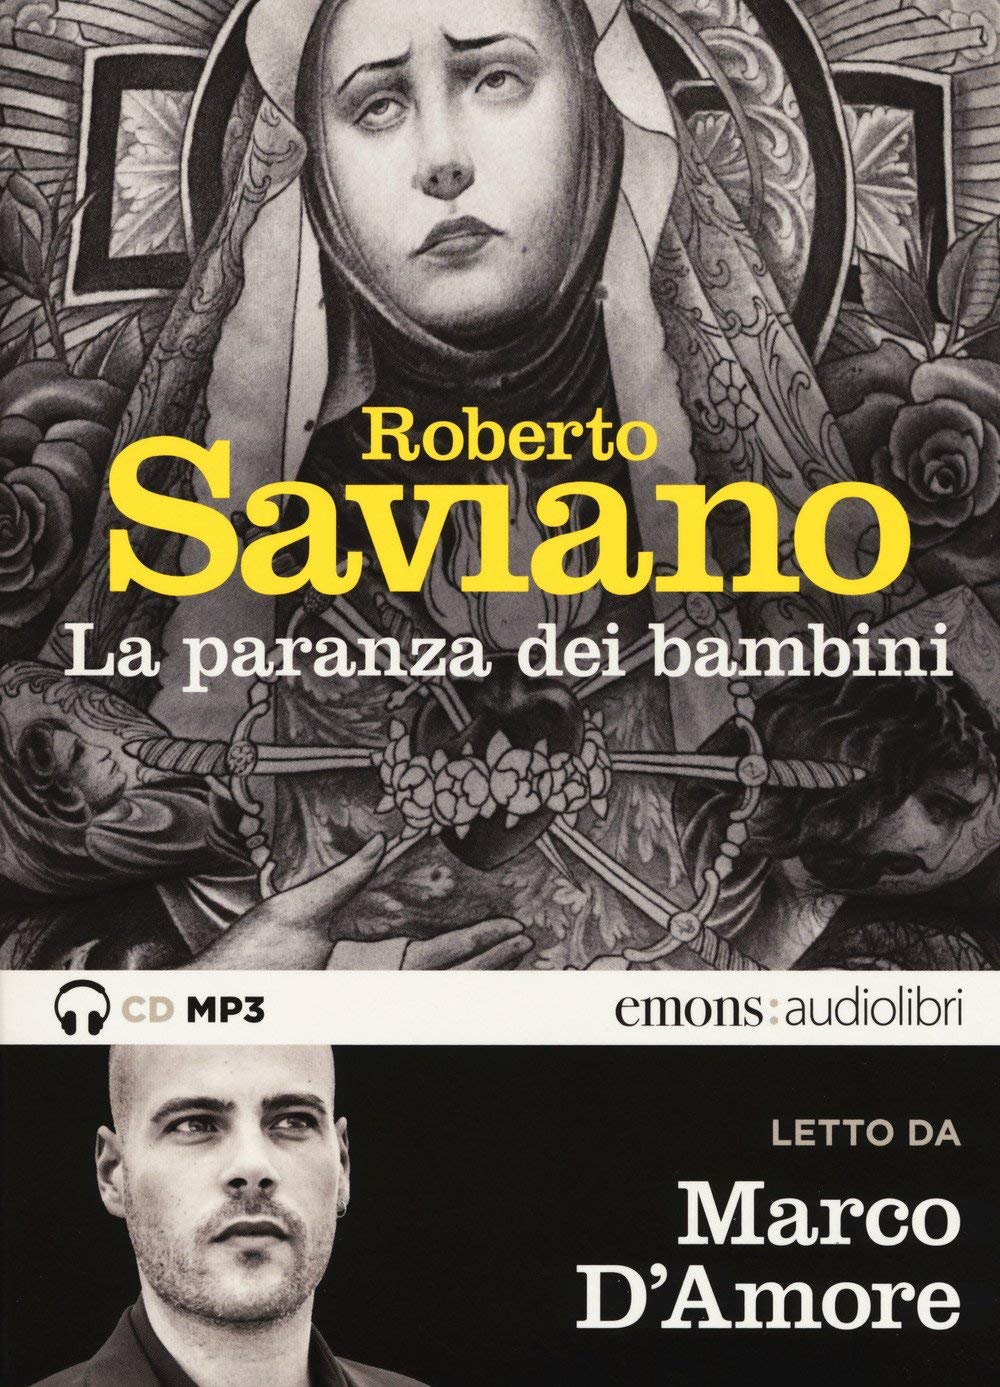 Audiolibro Roberto Saviano - Saviano, Roberto (Audiolibro) NUOVO SIGILLATO, EDIZIONE DEL 22/03/2018 SUBITO DISPONIBILE